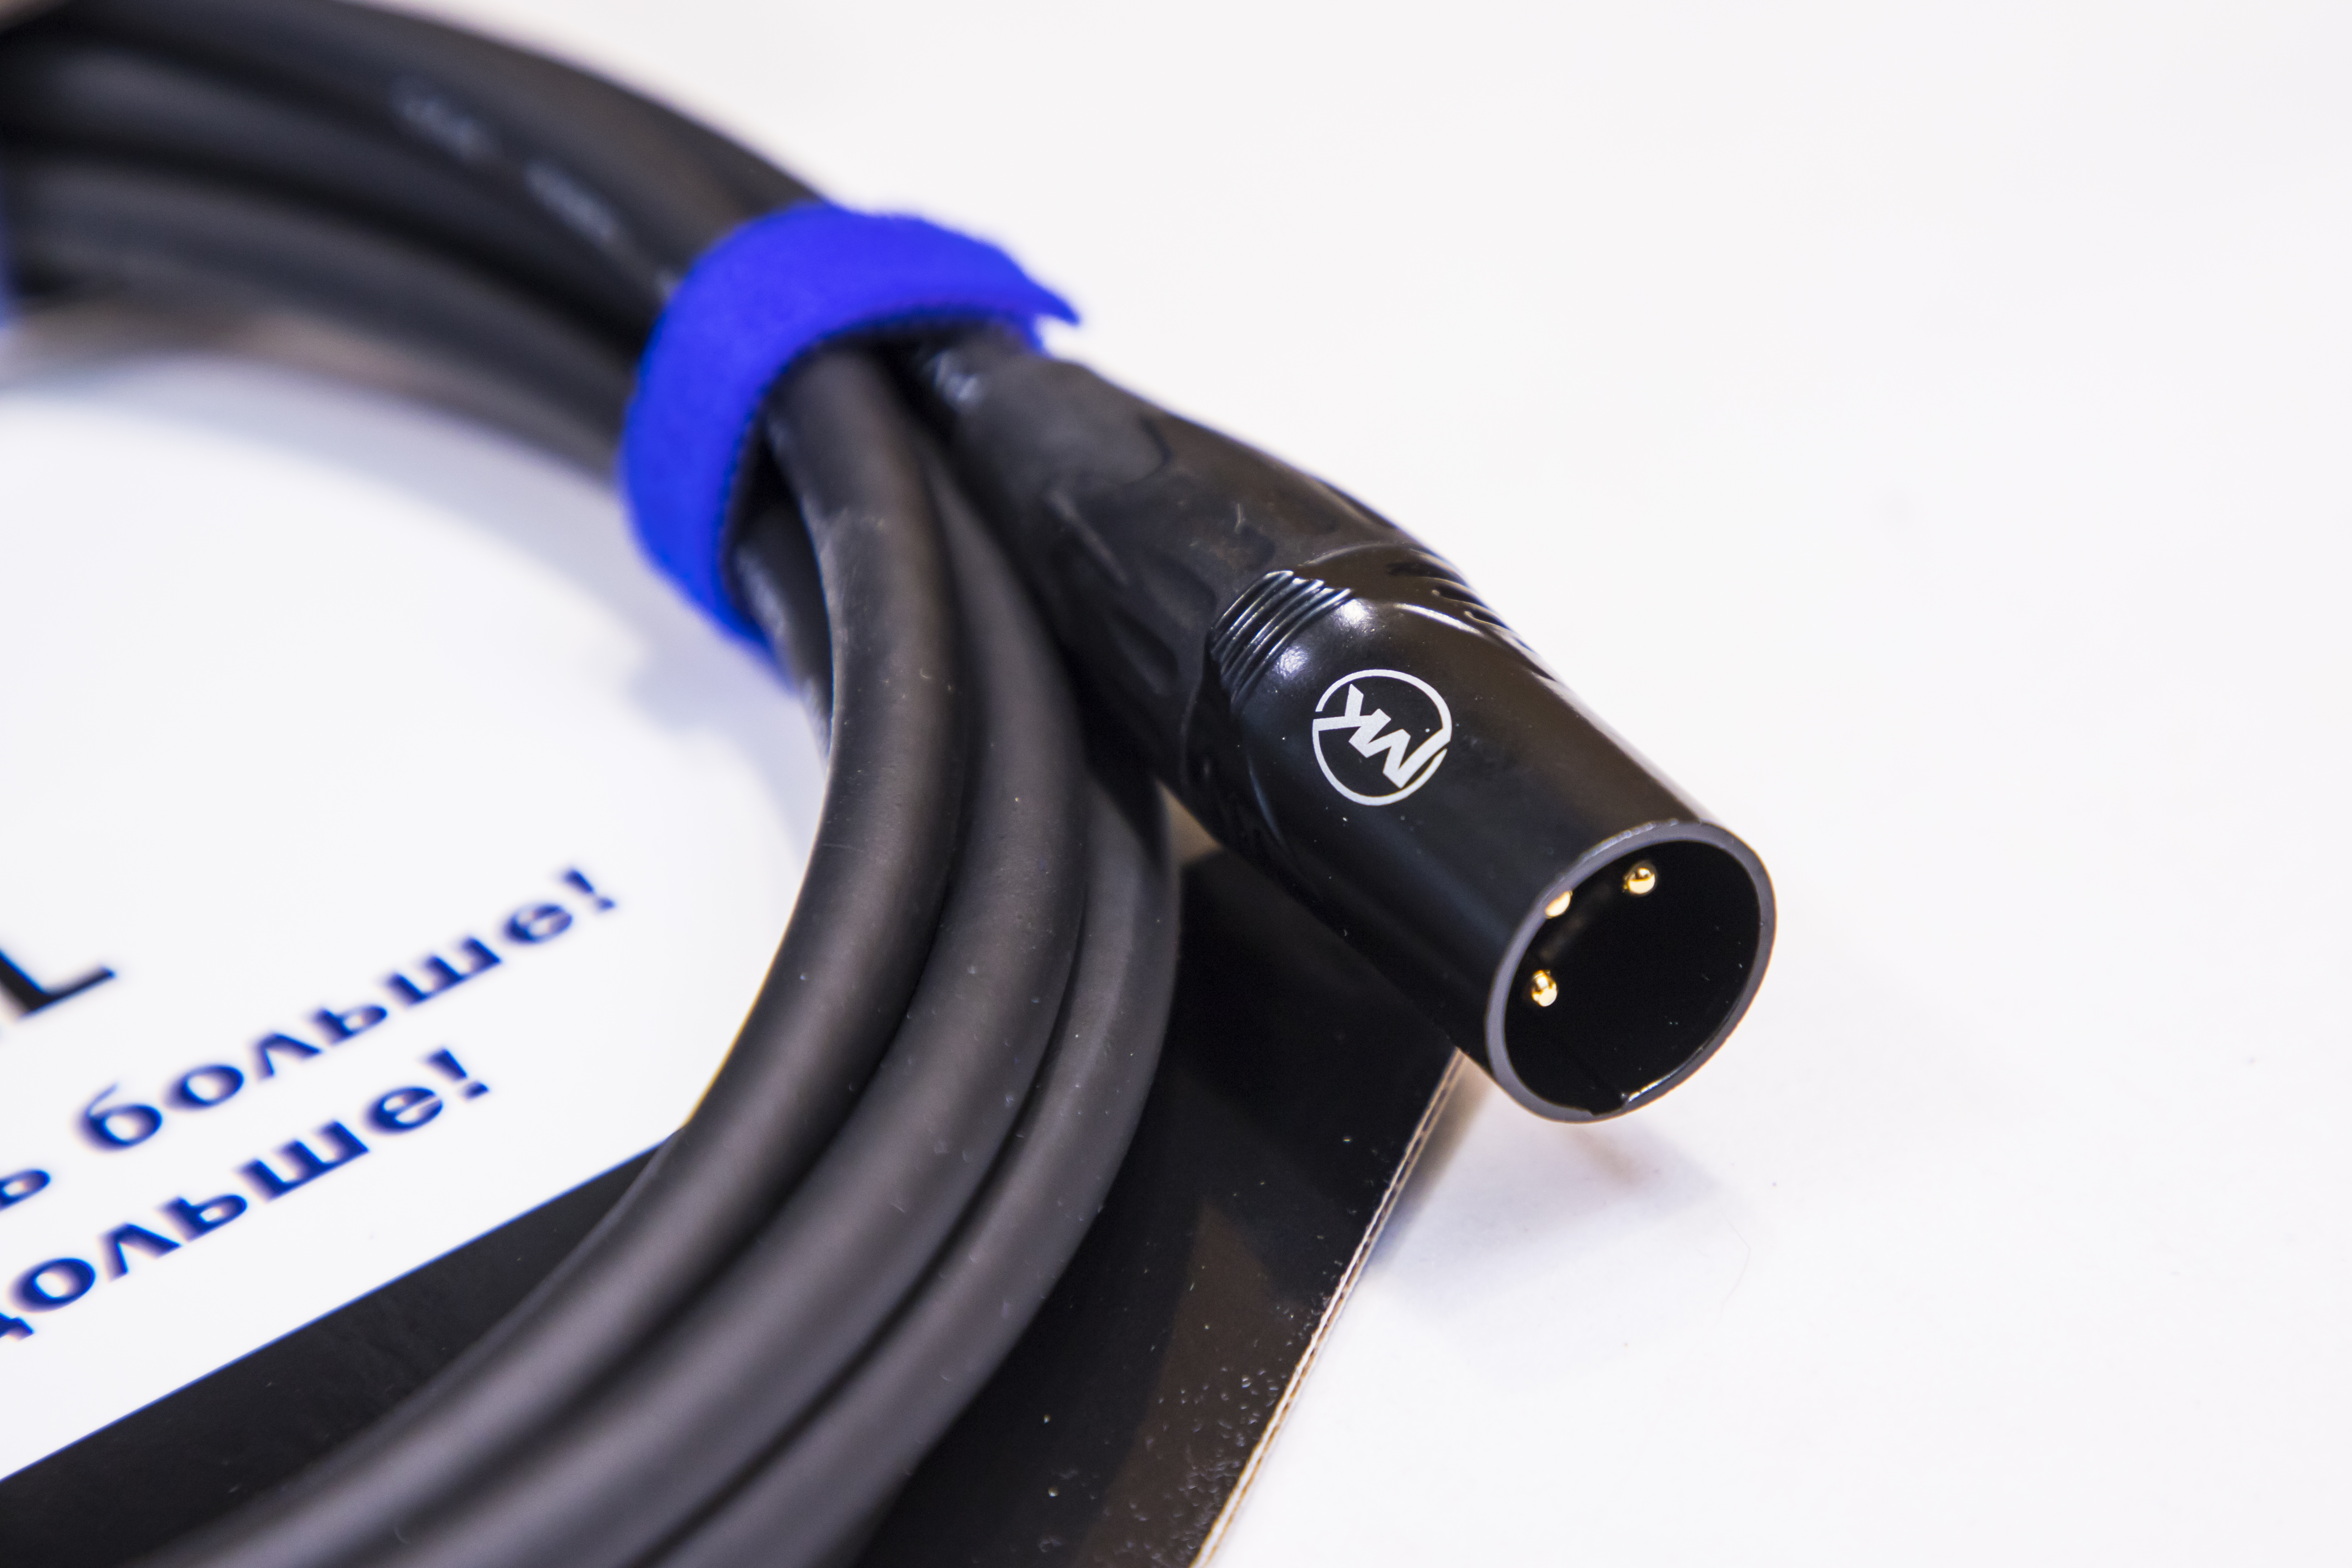 Микрофонный кабель MUZKABEL XXFMK1B - 10 метров, XLR – XLR